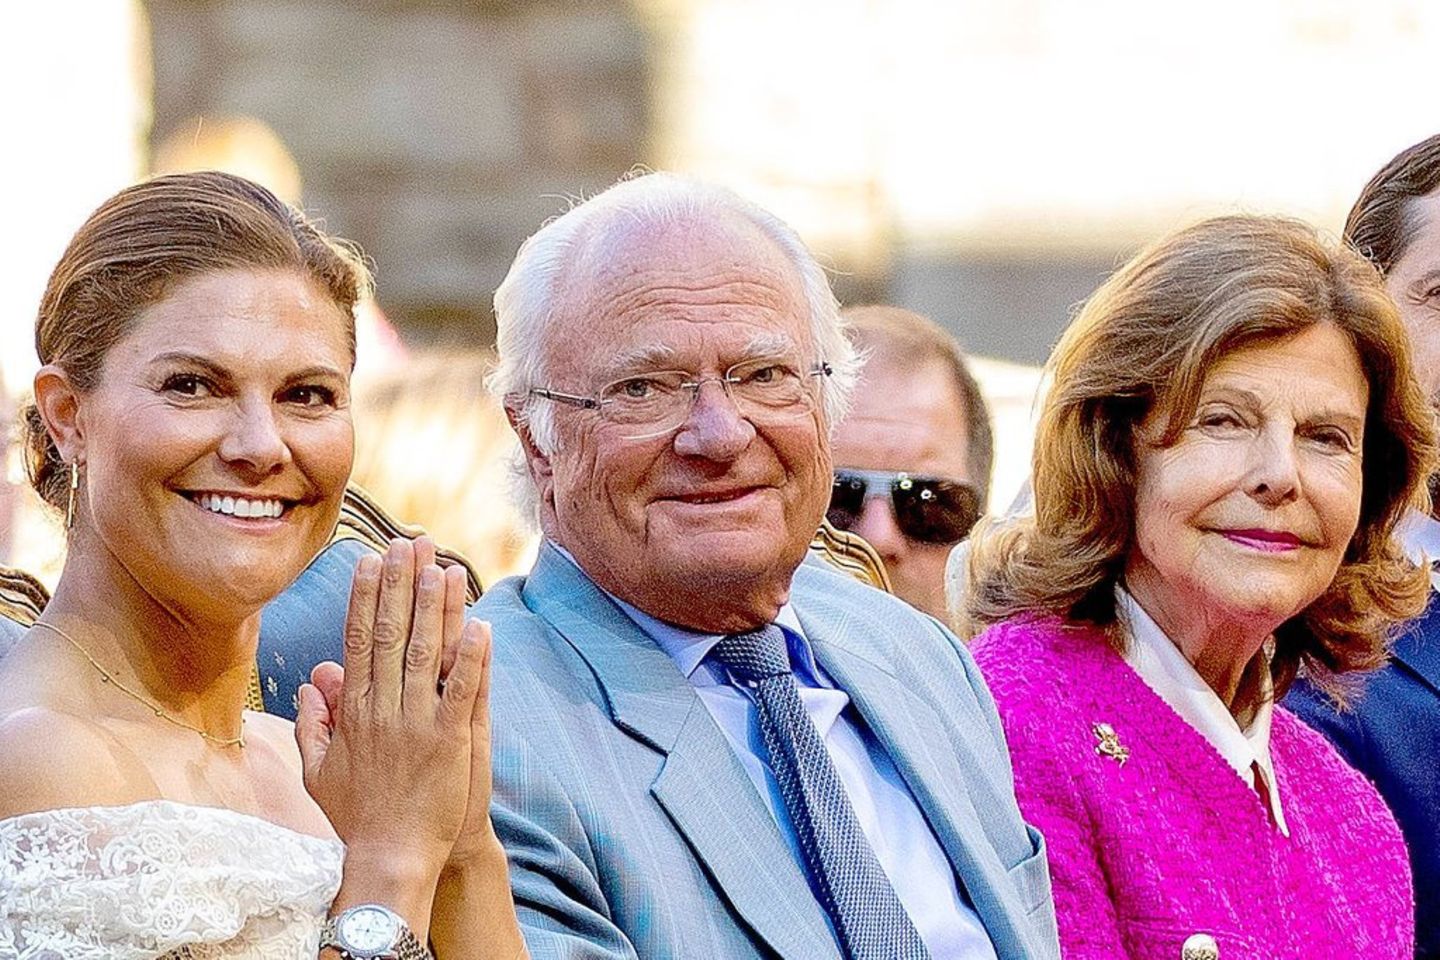 König Carl Gustaf von Schweden hat mit der Wahl seiner Ehefrau Silvia (r.) und mit seiner Thronfolgerin Victoria vieles richti